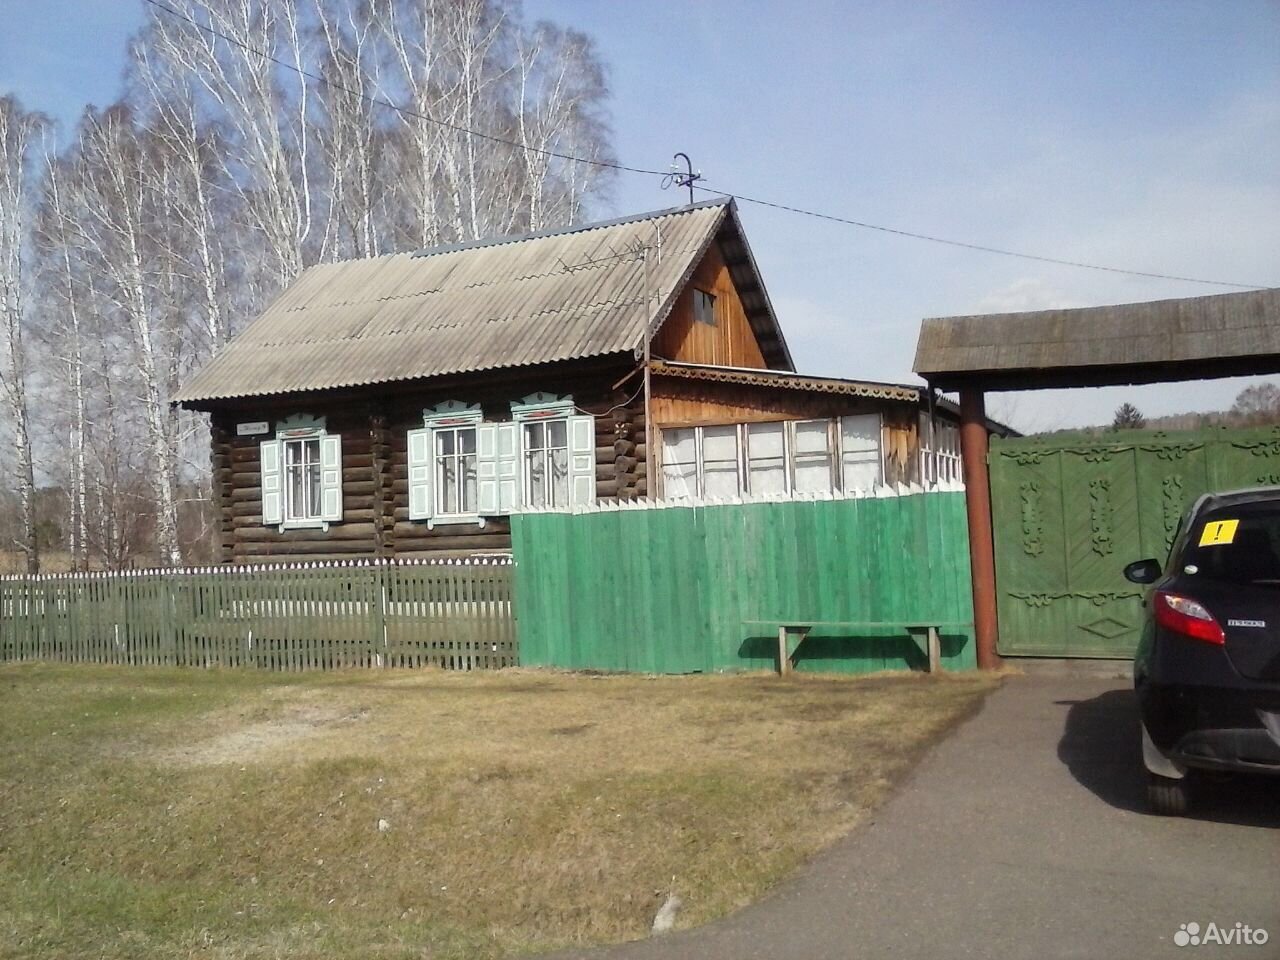 Зеленогорск красноярский край объявления недвижимость